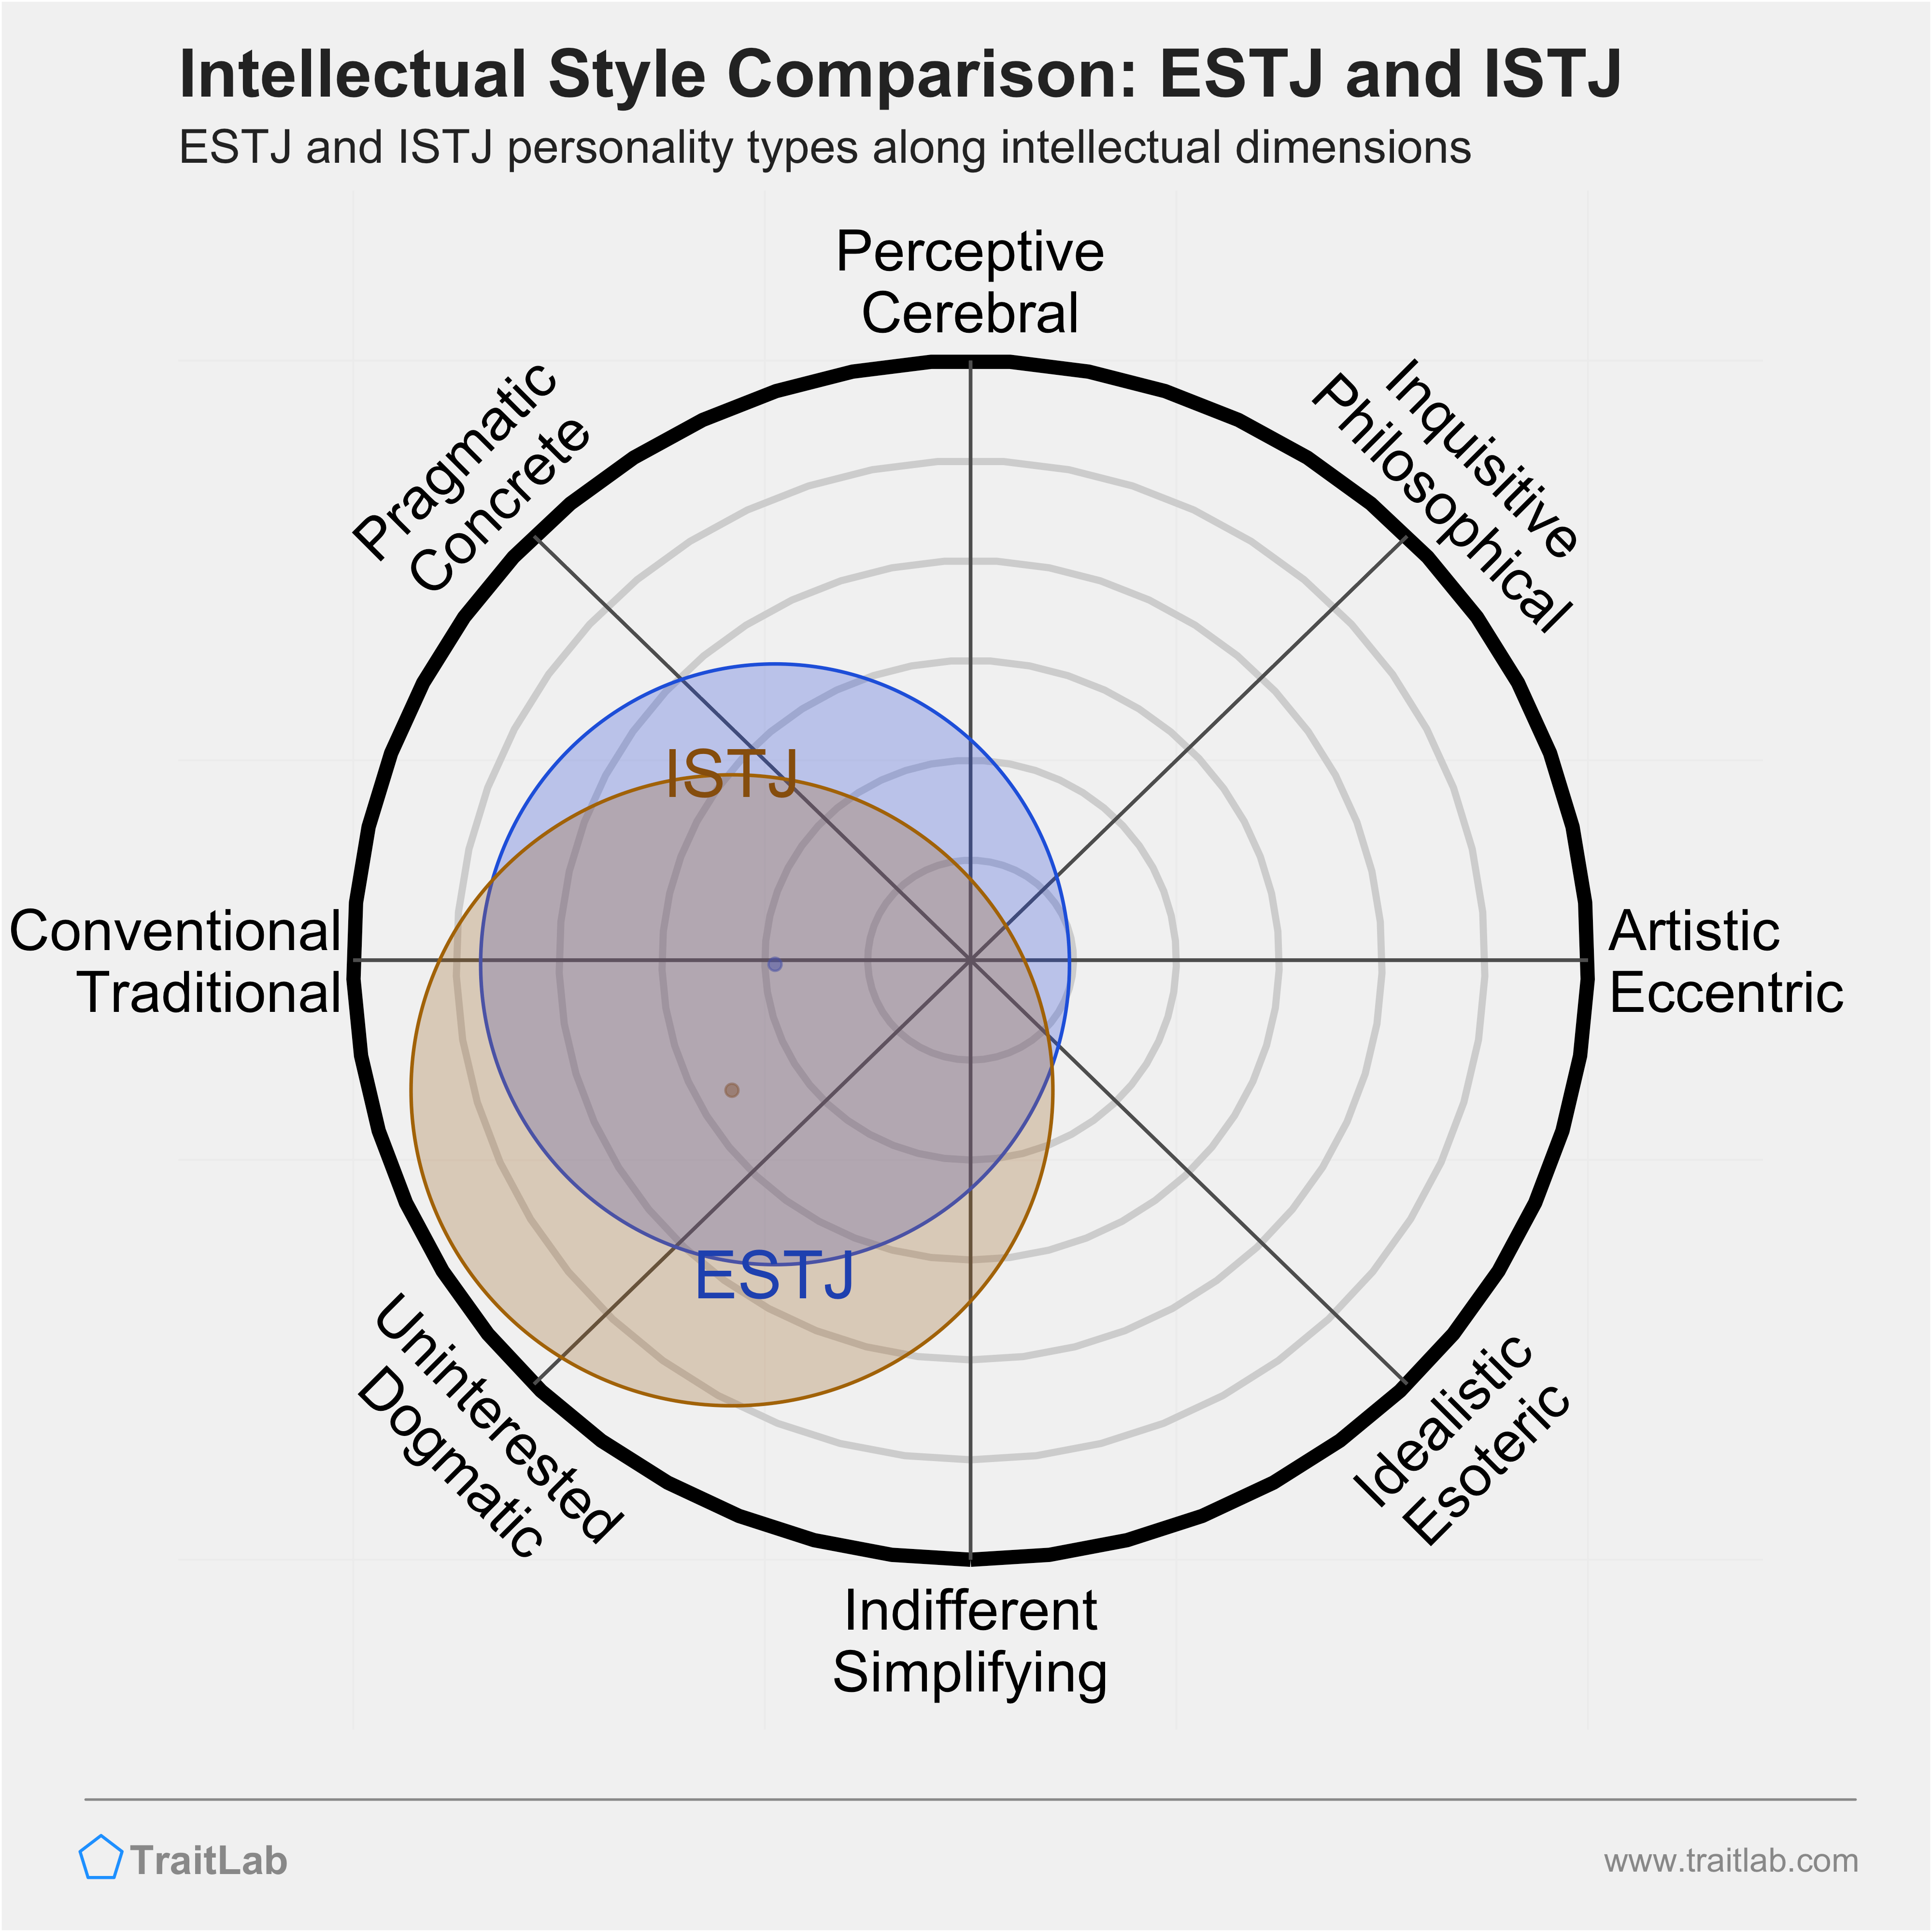 ESTJ and ISTJ comparison across intellectual dimensions